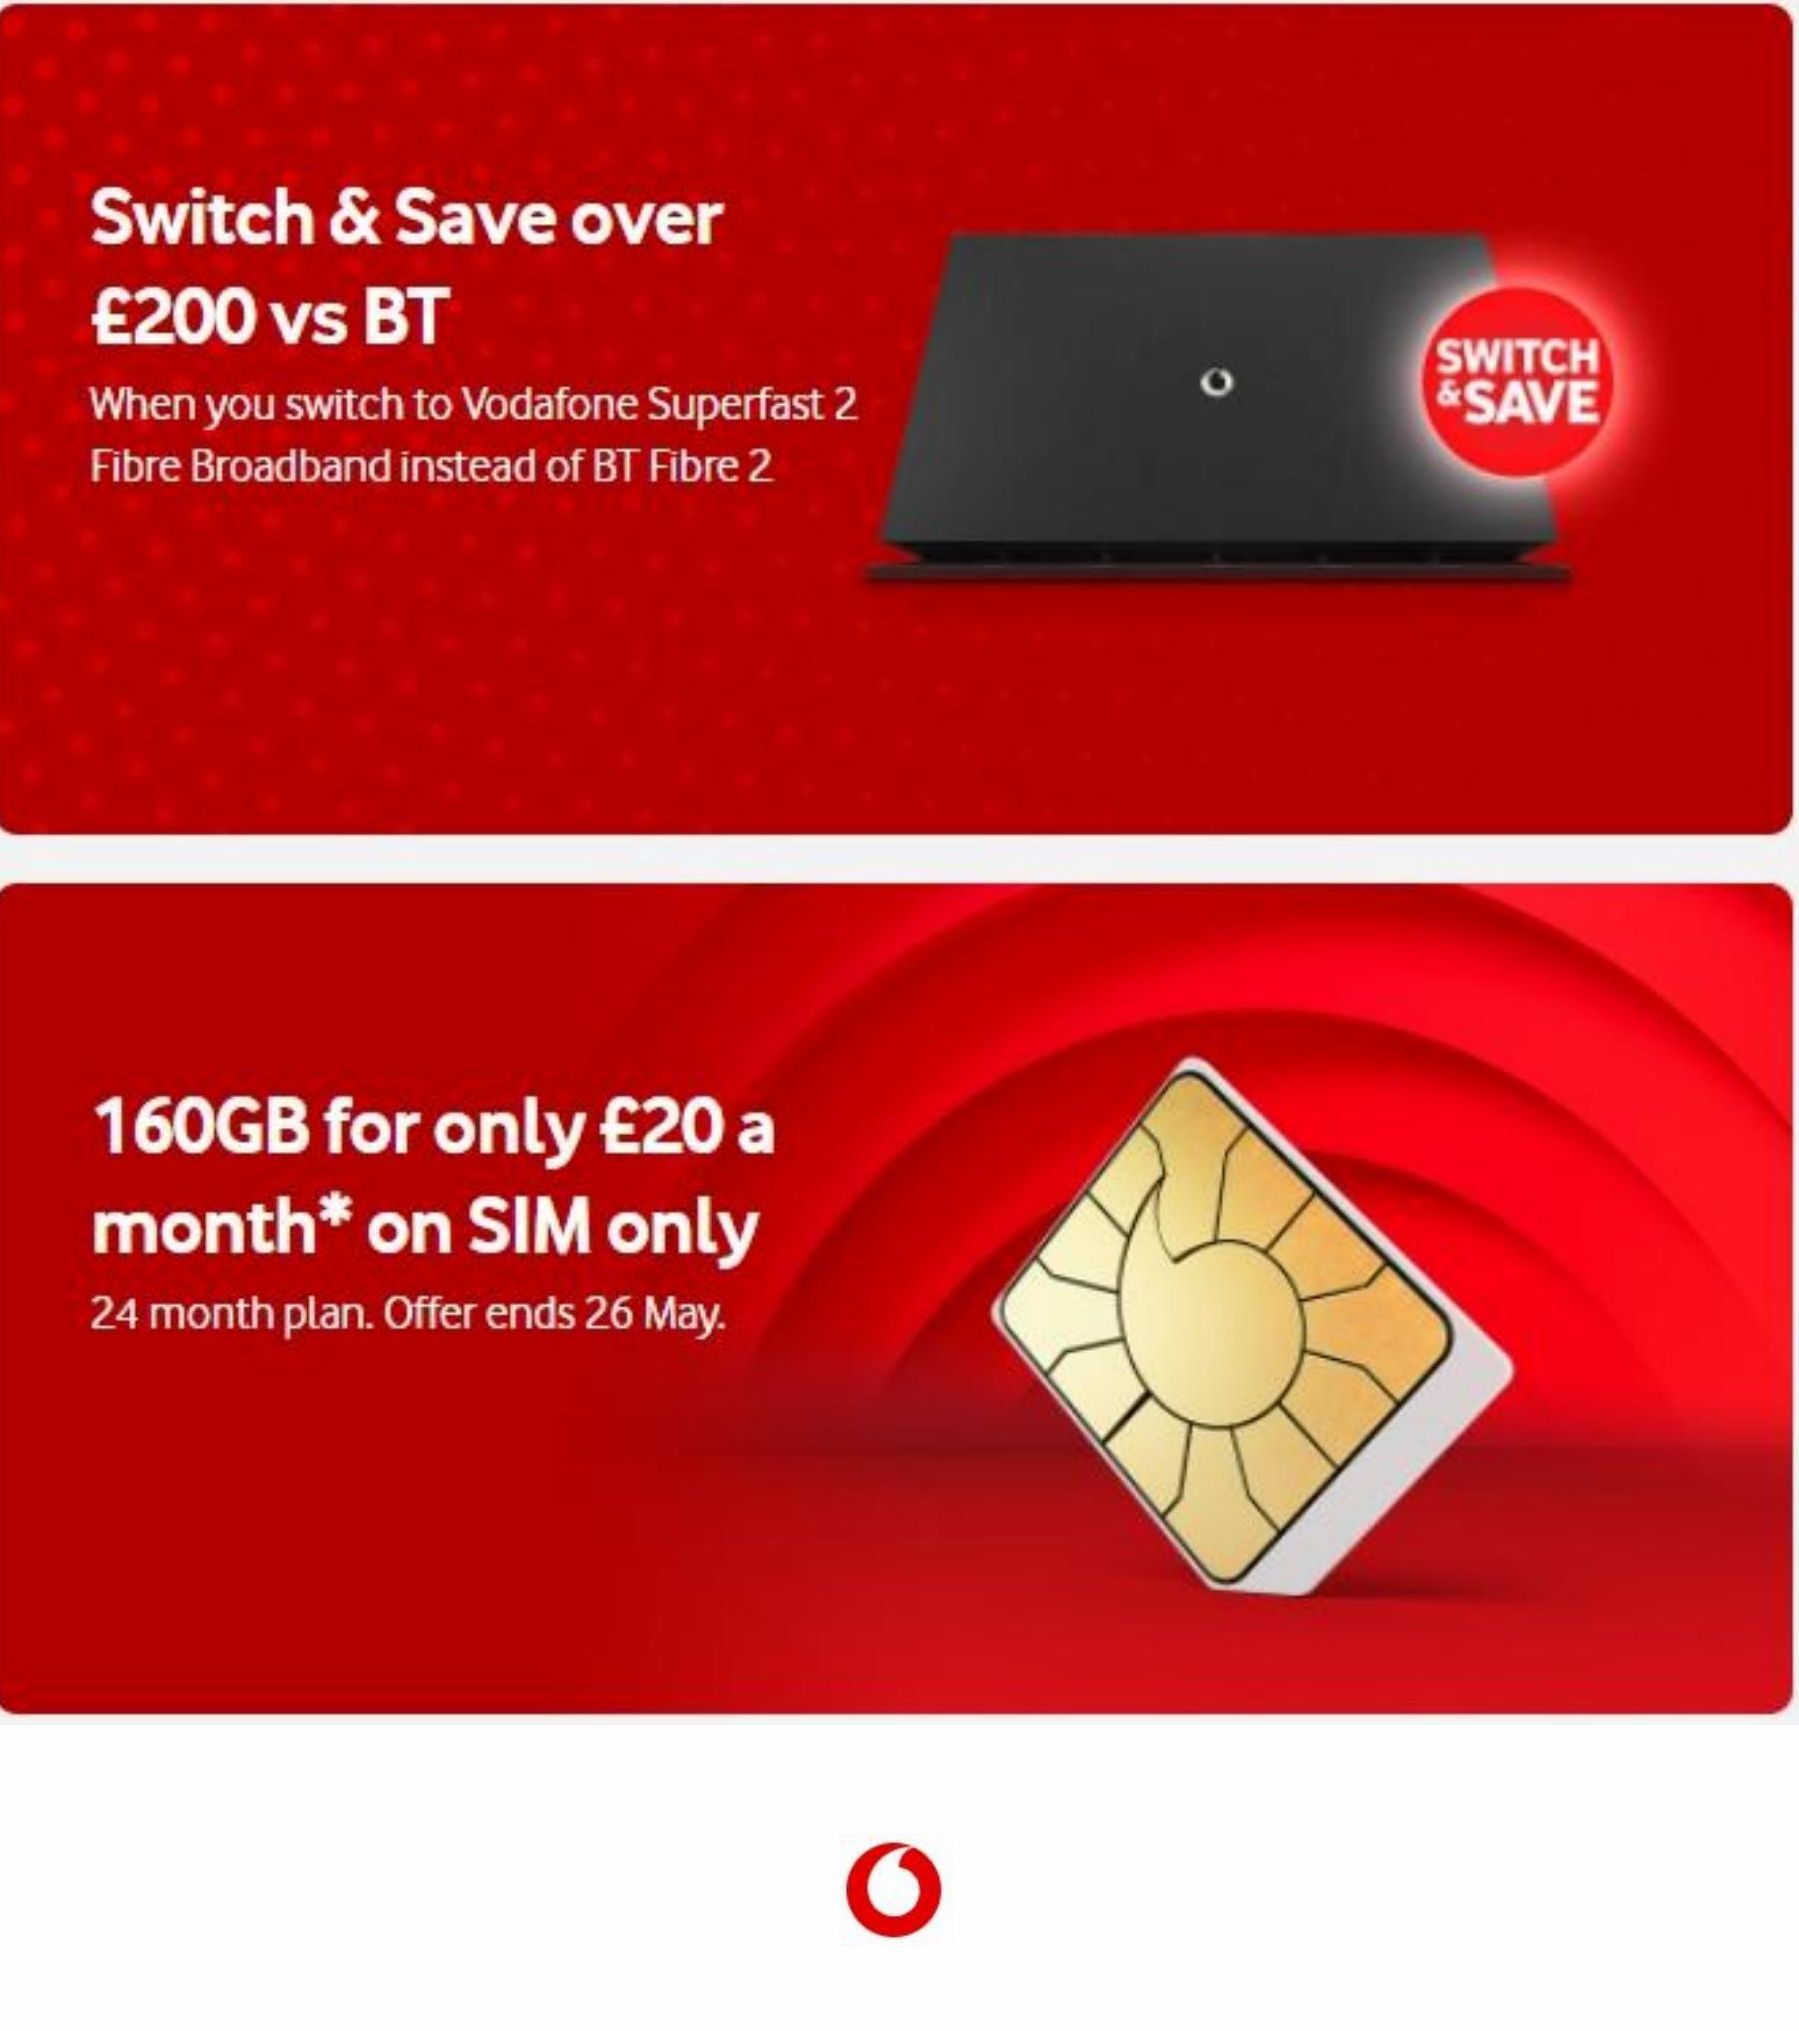 Season offers in Vodafone